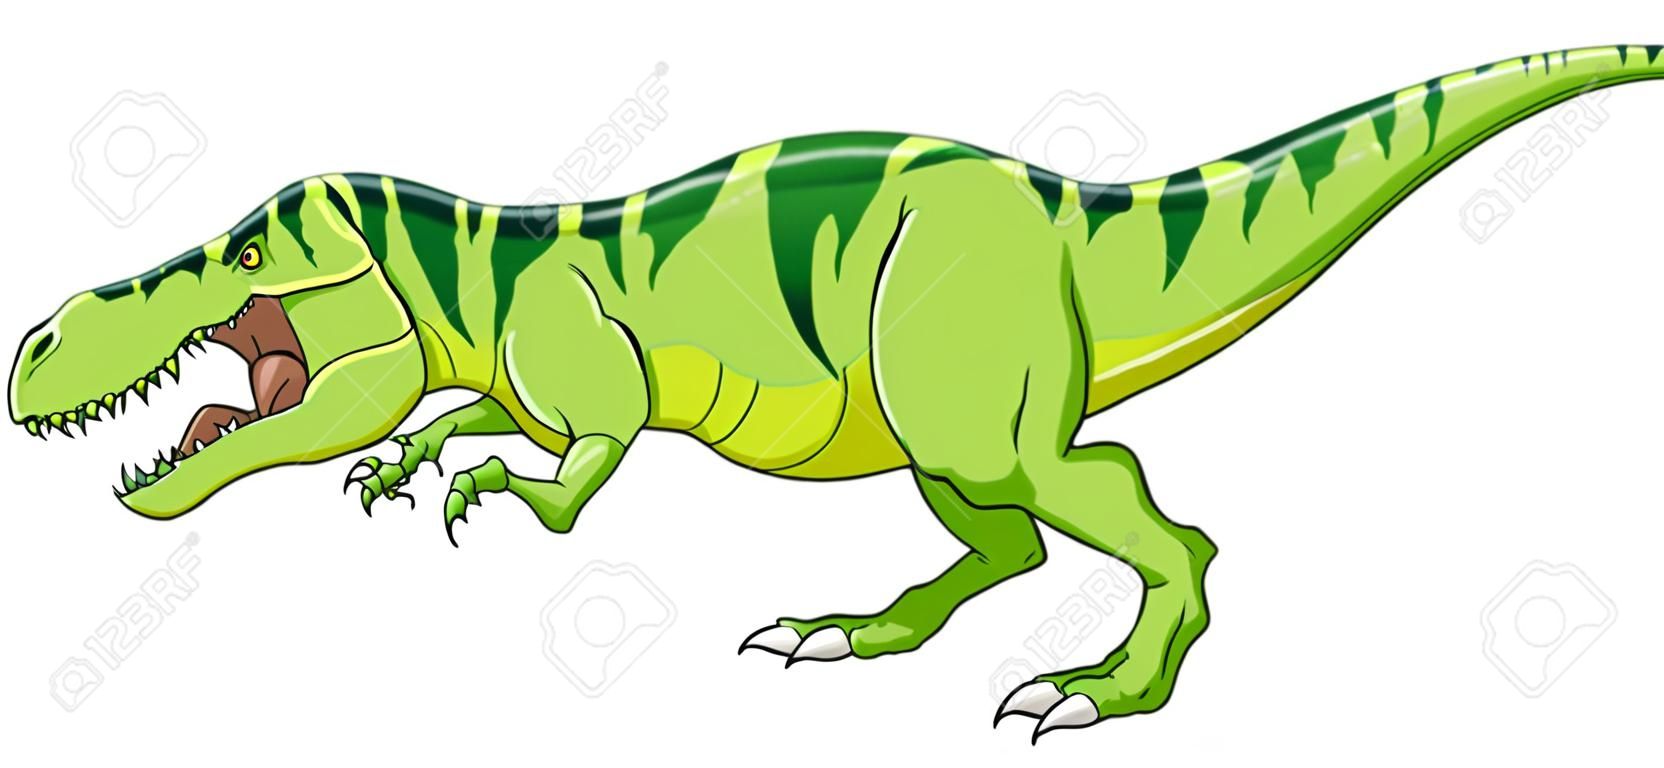 Cartoon green t-rex dinosaur growling